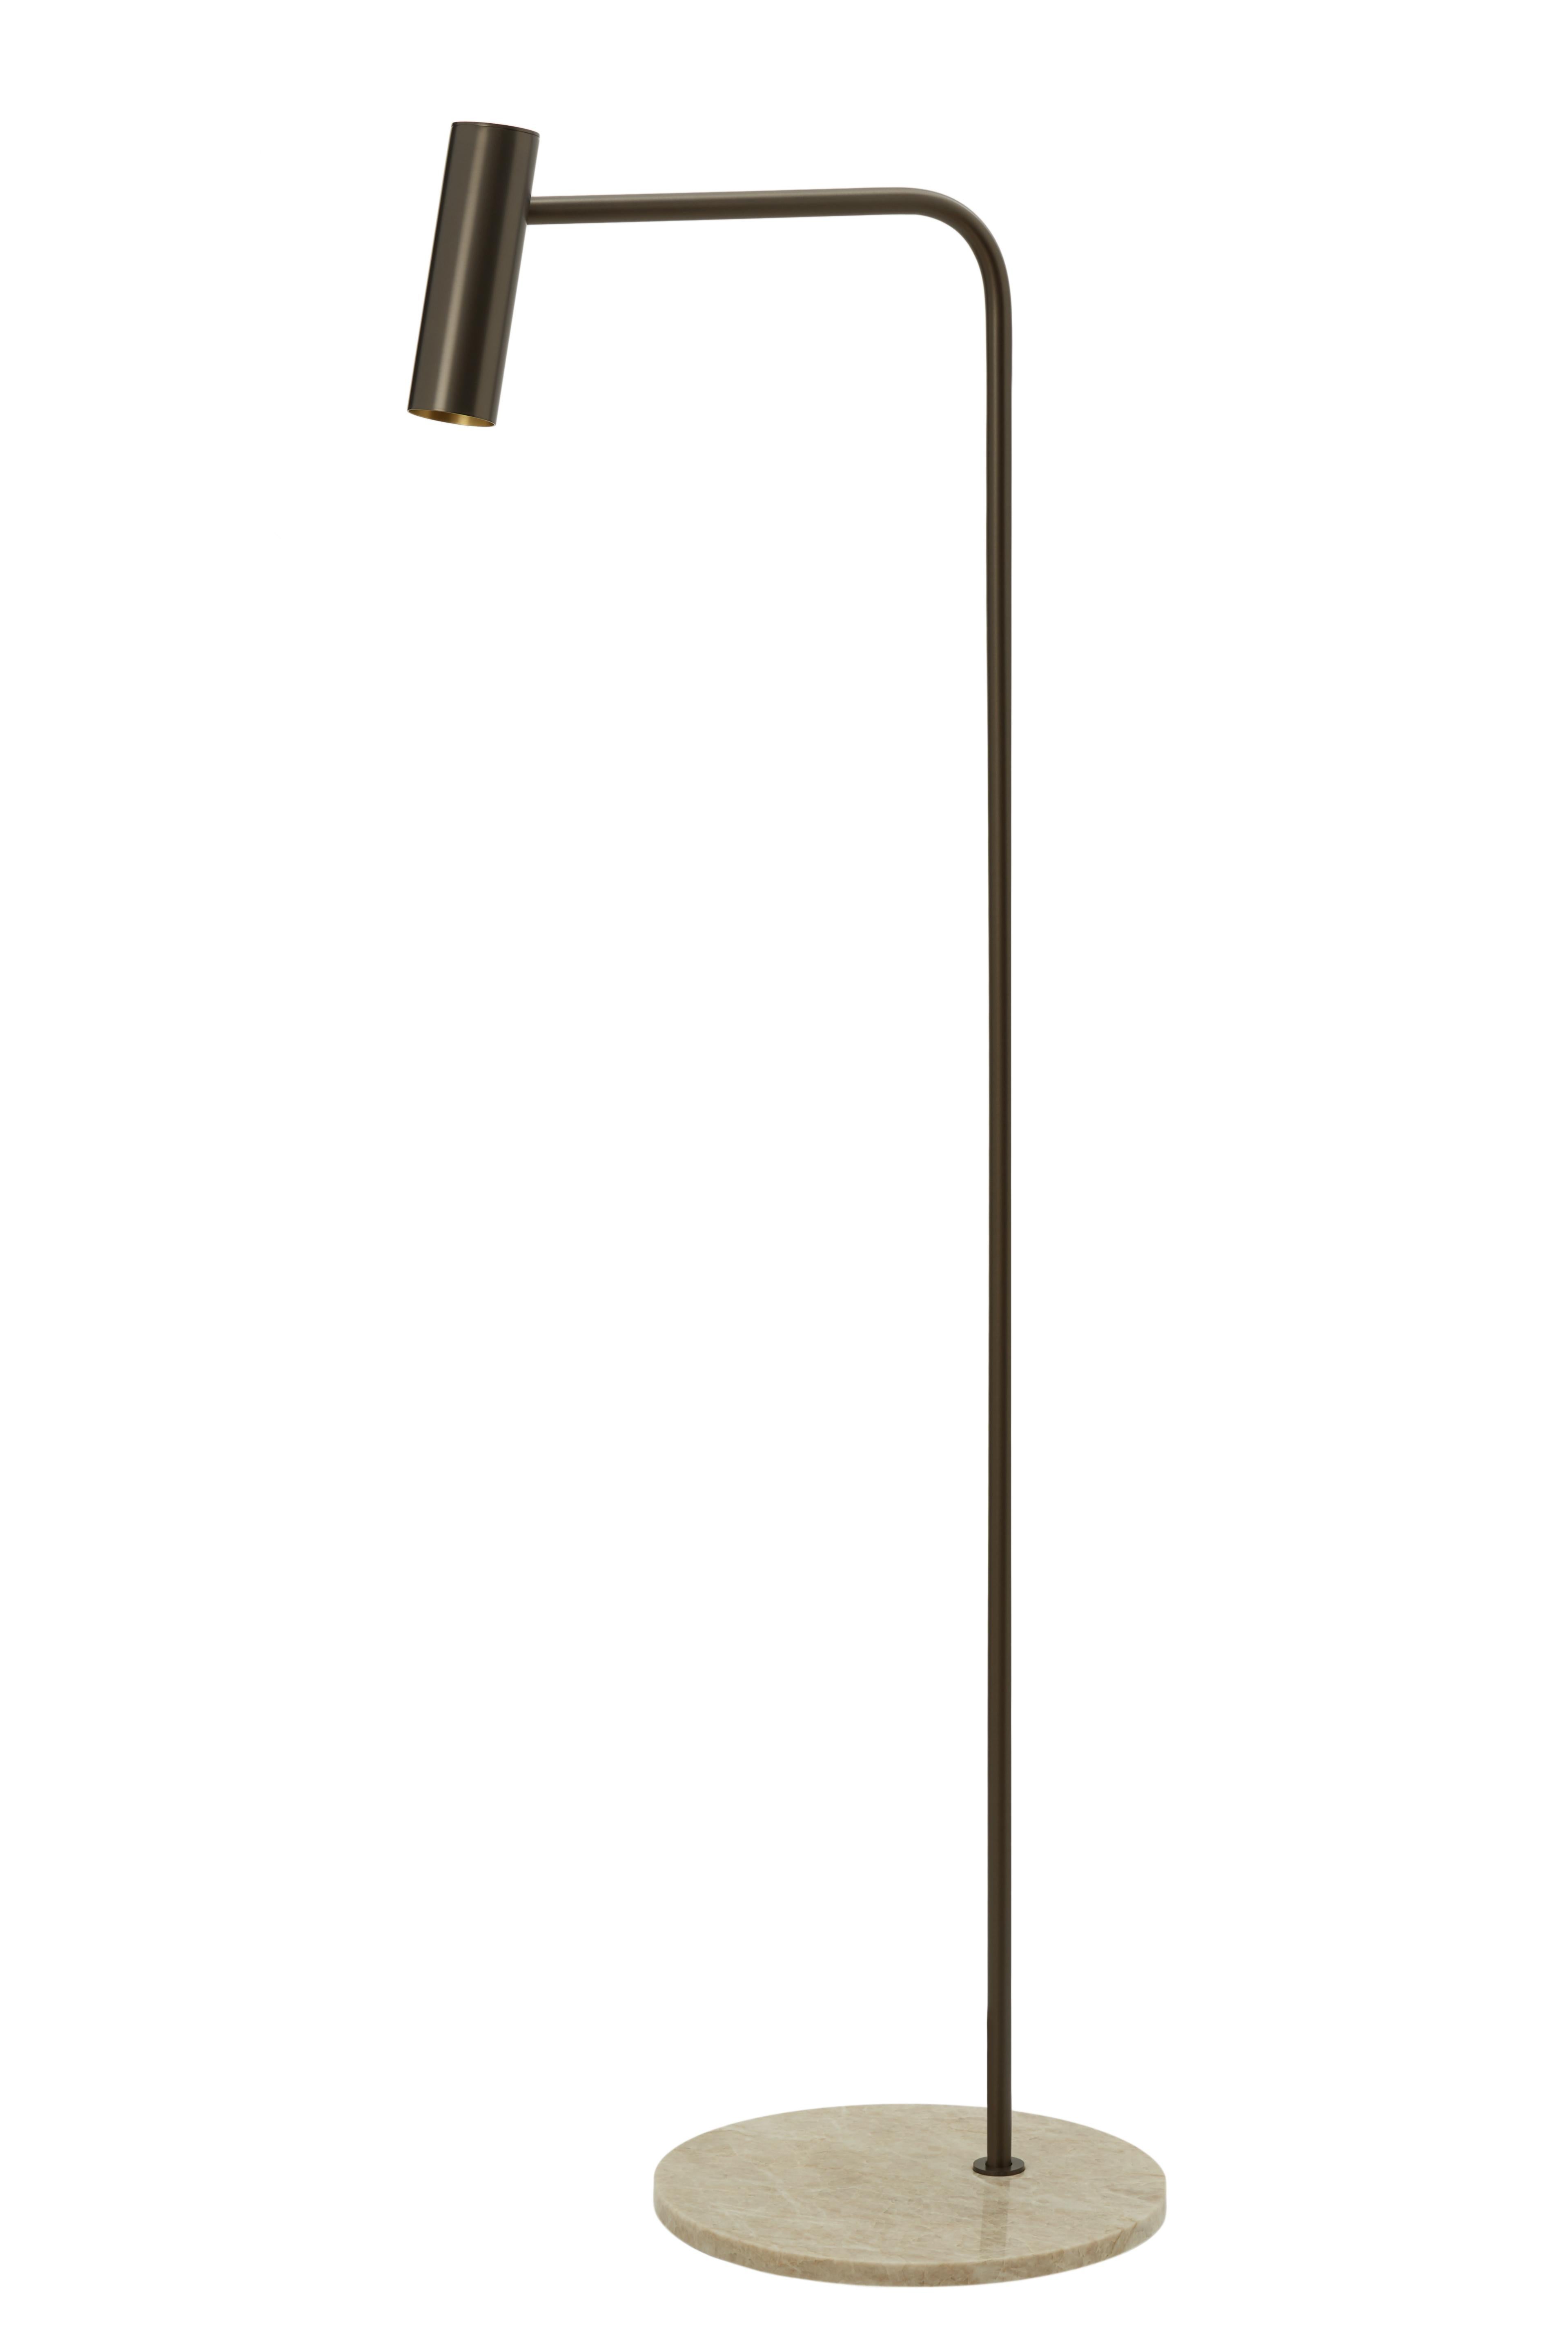 Lampadaire Heron de CTO Lighting
Matériaux : laiton satiné avec tête mobile et base en marbre noir marquina adouci.
Également disponible en bronze avec tête mobile et base en marbre calacatta viola.
Dimensions : L 39,5 x P 59 x H 159 cm